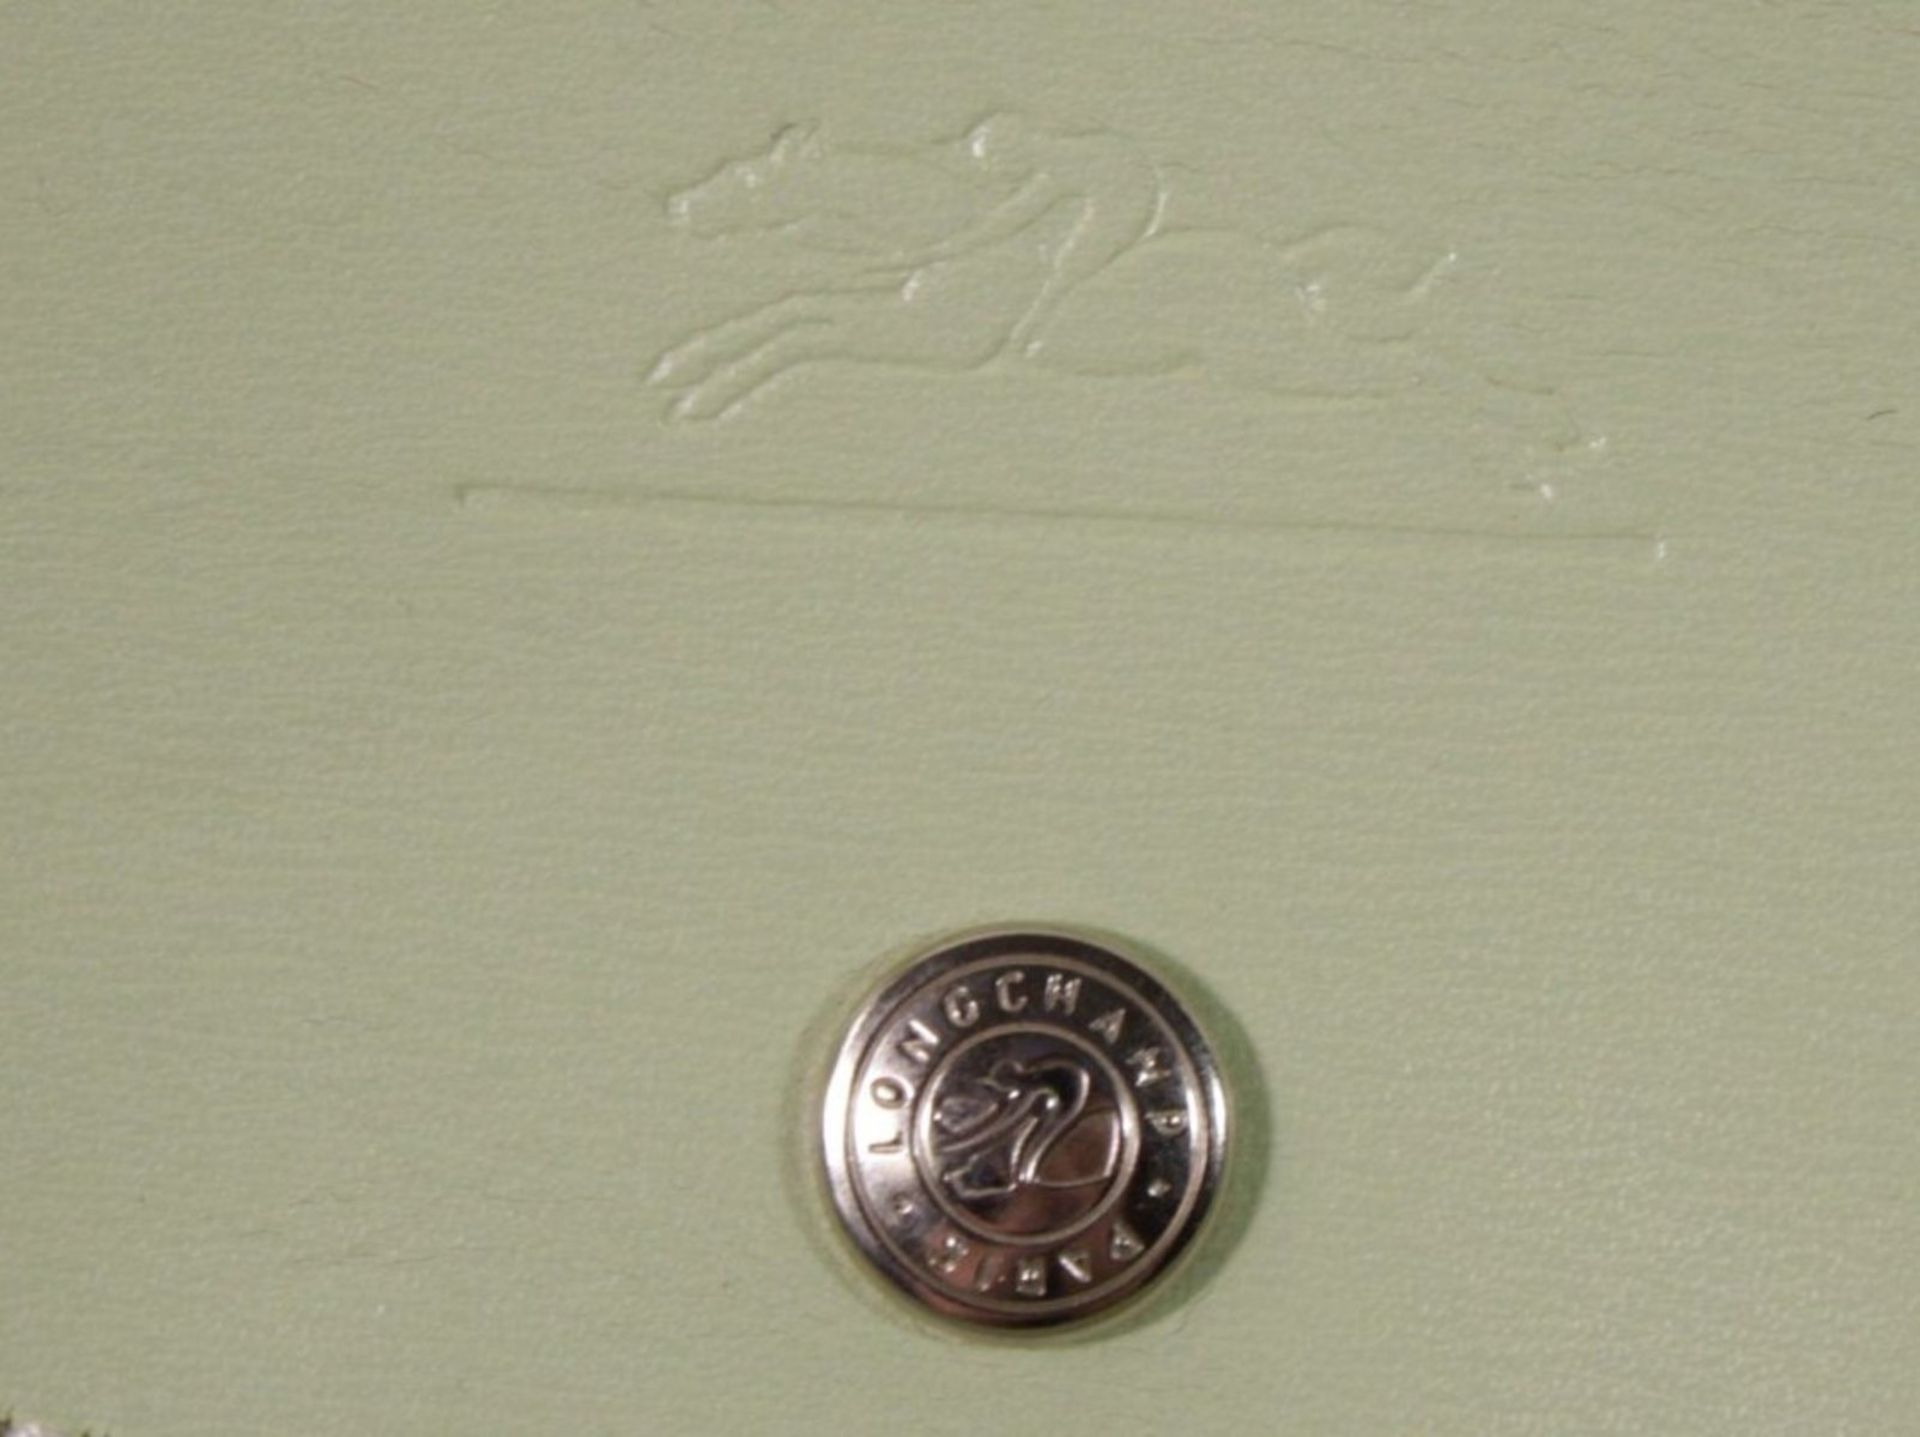 Longchamp-Tasche, leichte Tragespuren, Mintgrün, 26 x 39cm.  - Bild 3 aus 6